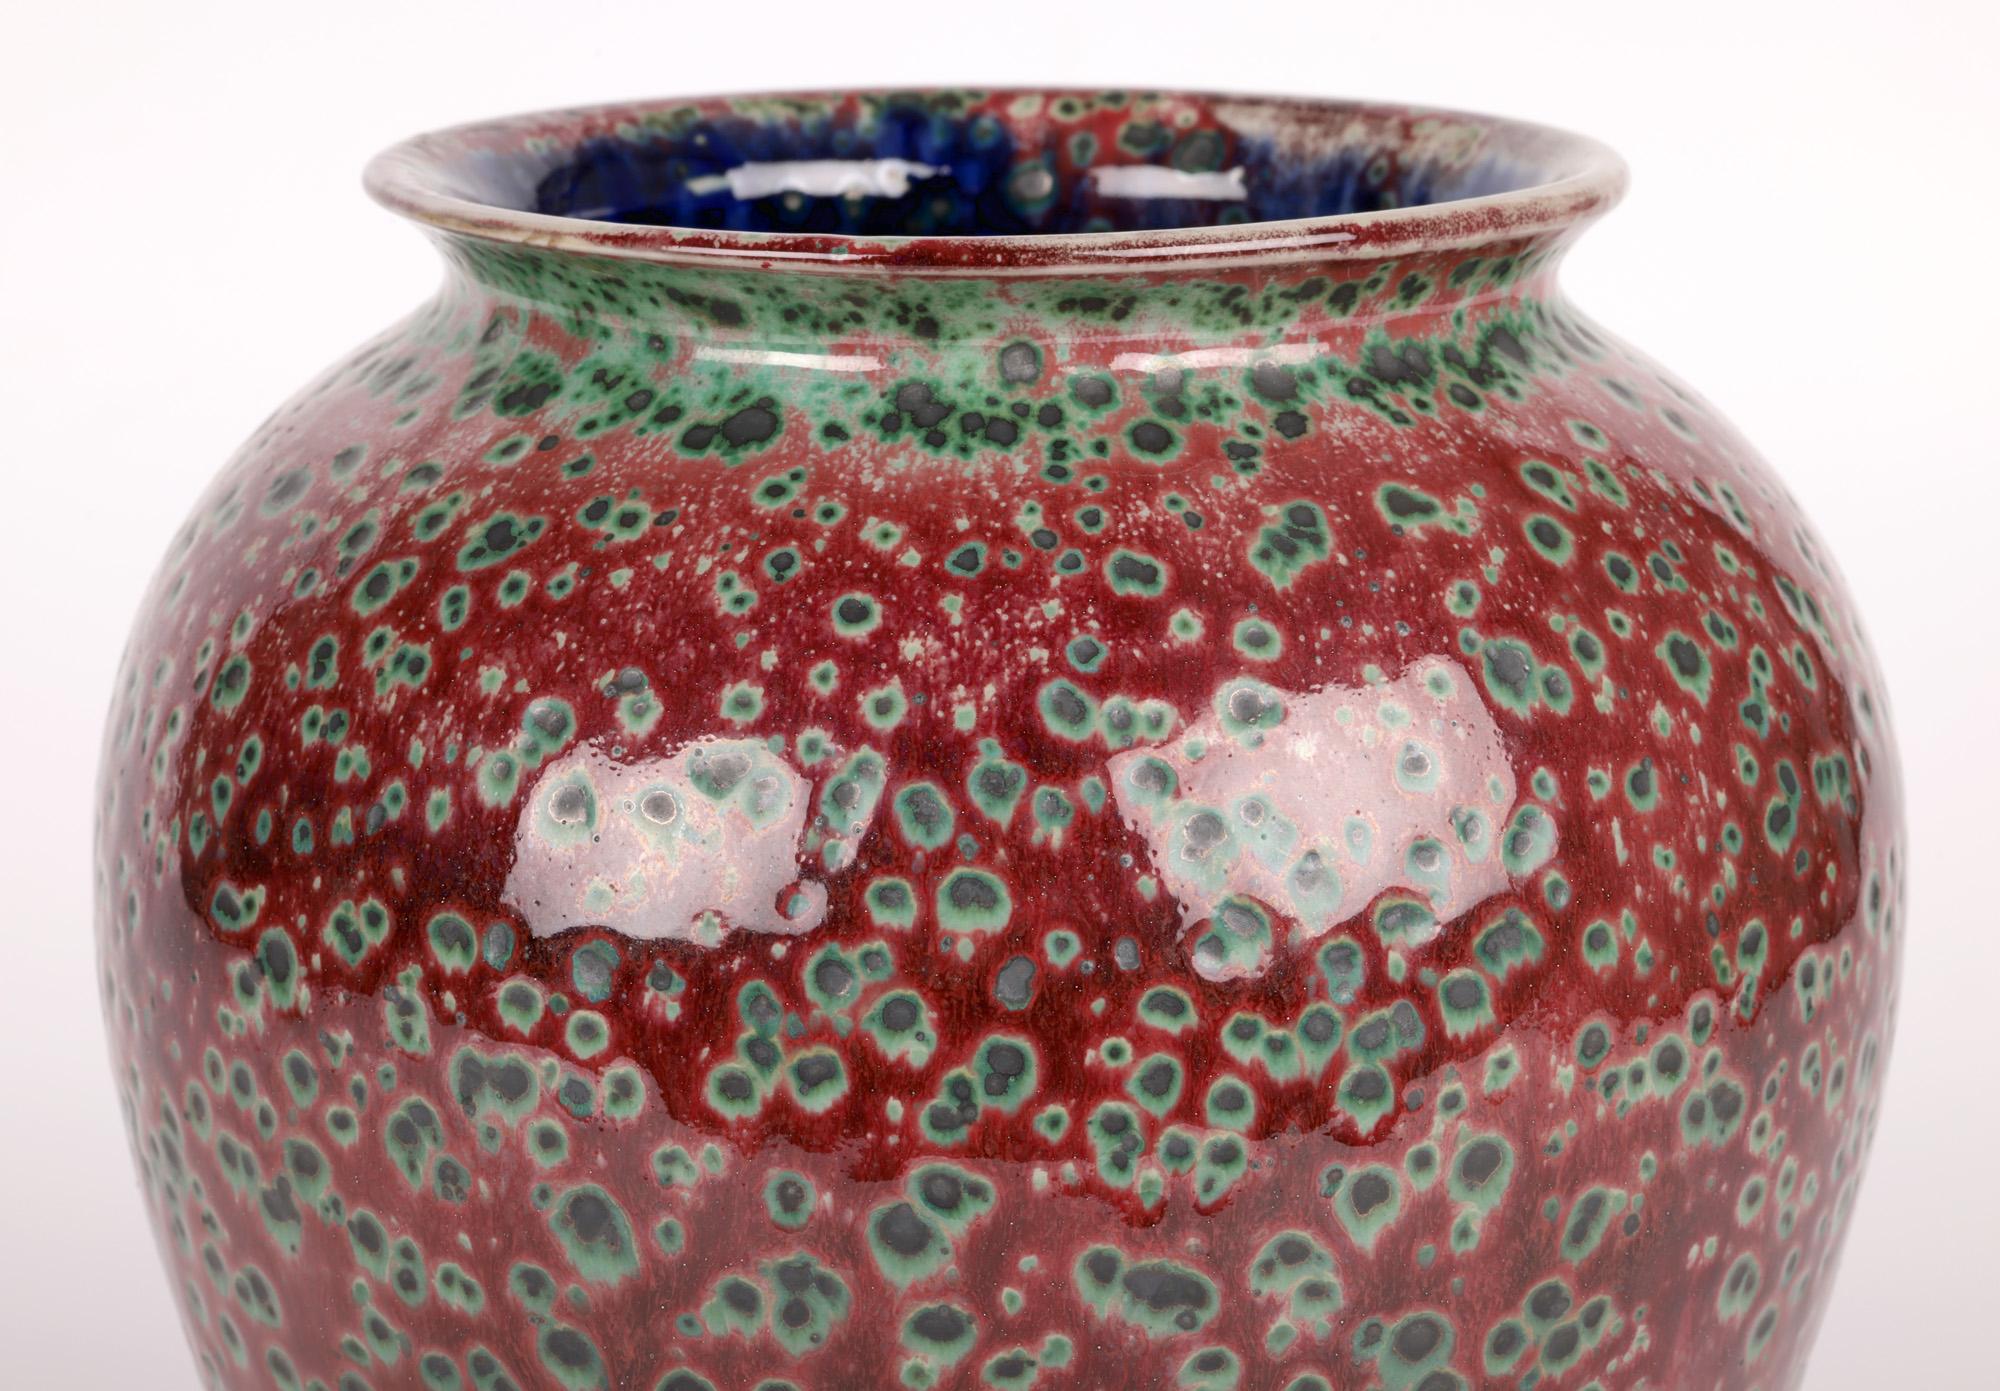 Eine außergewöhnliche, beeindruckende, einzigartige Vase aus Cobridge-Keramik mit Ruskin-Glasur von Anita Harris, glasiert von Justine Emery, aus der Zeit um 2000. Die große runde, bauchige Vase aus Steinzeug steht auf einem runden Sockel mit einem